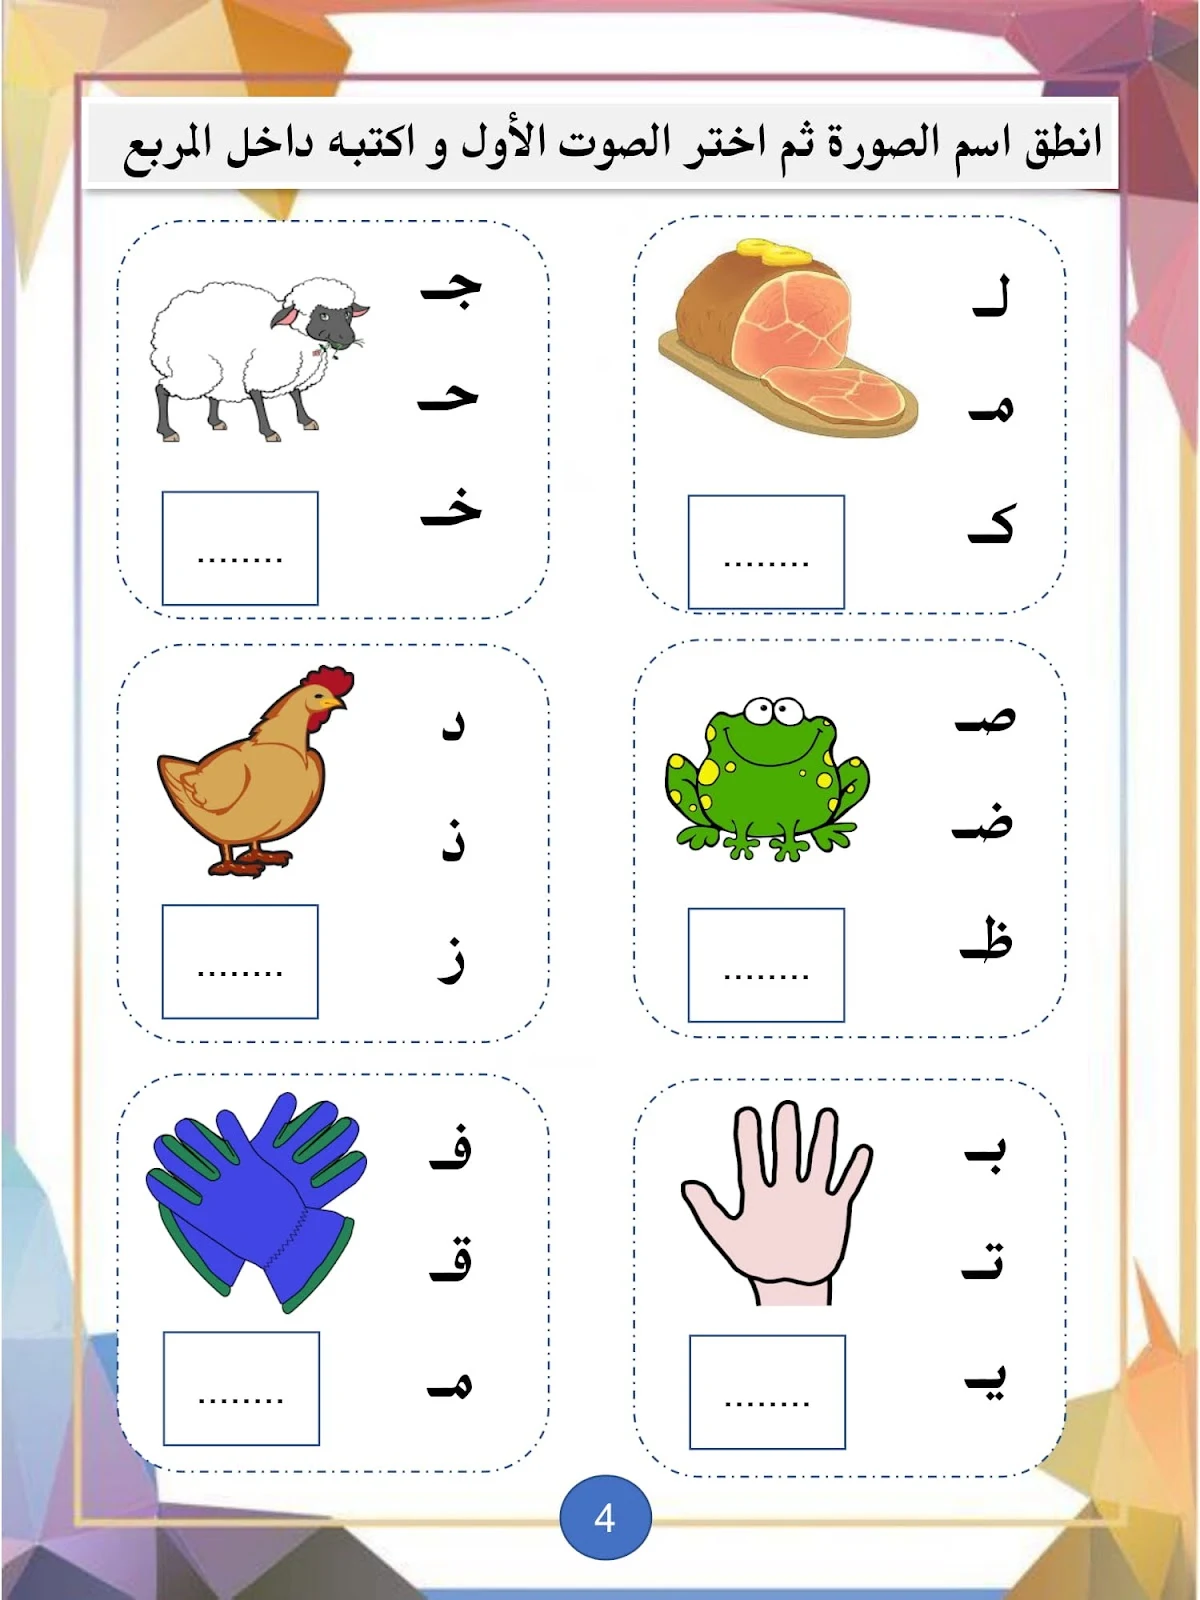 تحميل مذكرة لغتي صيفي لتعليم الاطفال القراءة والكتابة pdf